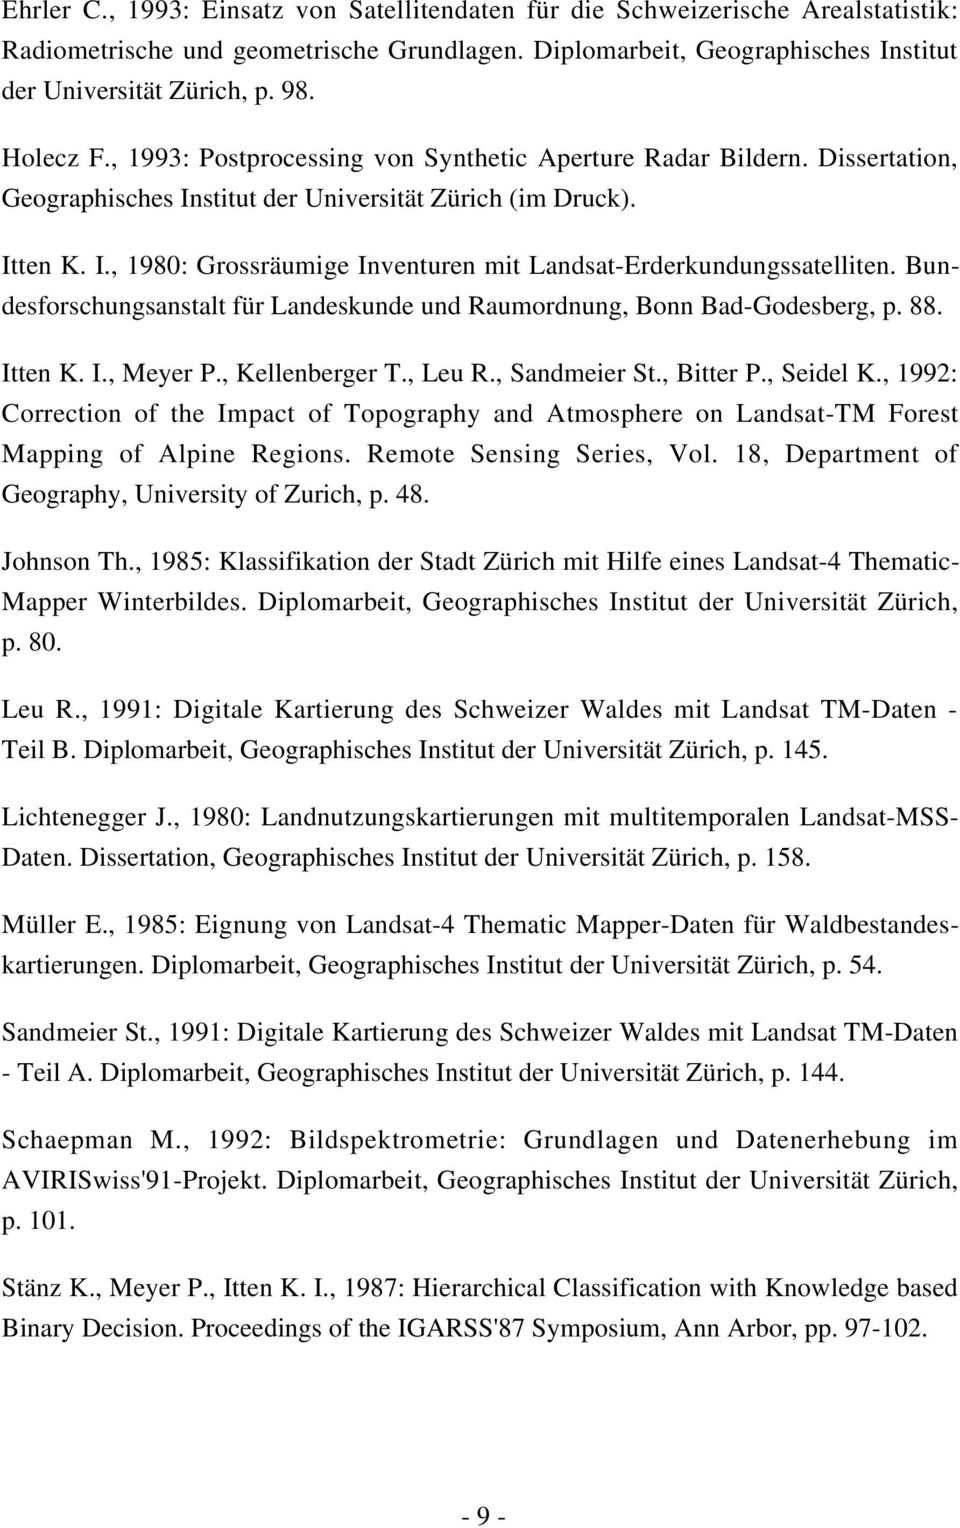 Bundesforschungsanstalt für Landeskunde und Raumordnung, Bonn Bad-Godesberg, p. 88. Itten K. I., Meyer P., Kellenberger T., Leu R., Sandmeier St., Bitter P., Seidel K.